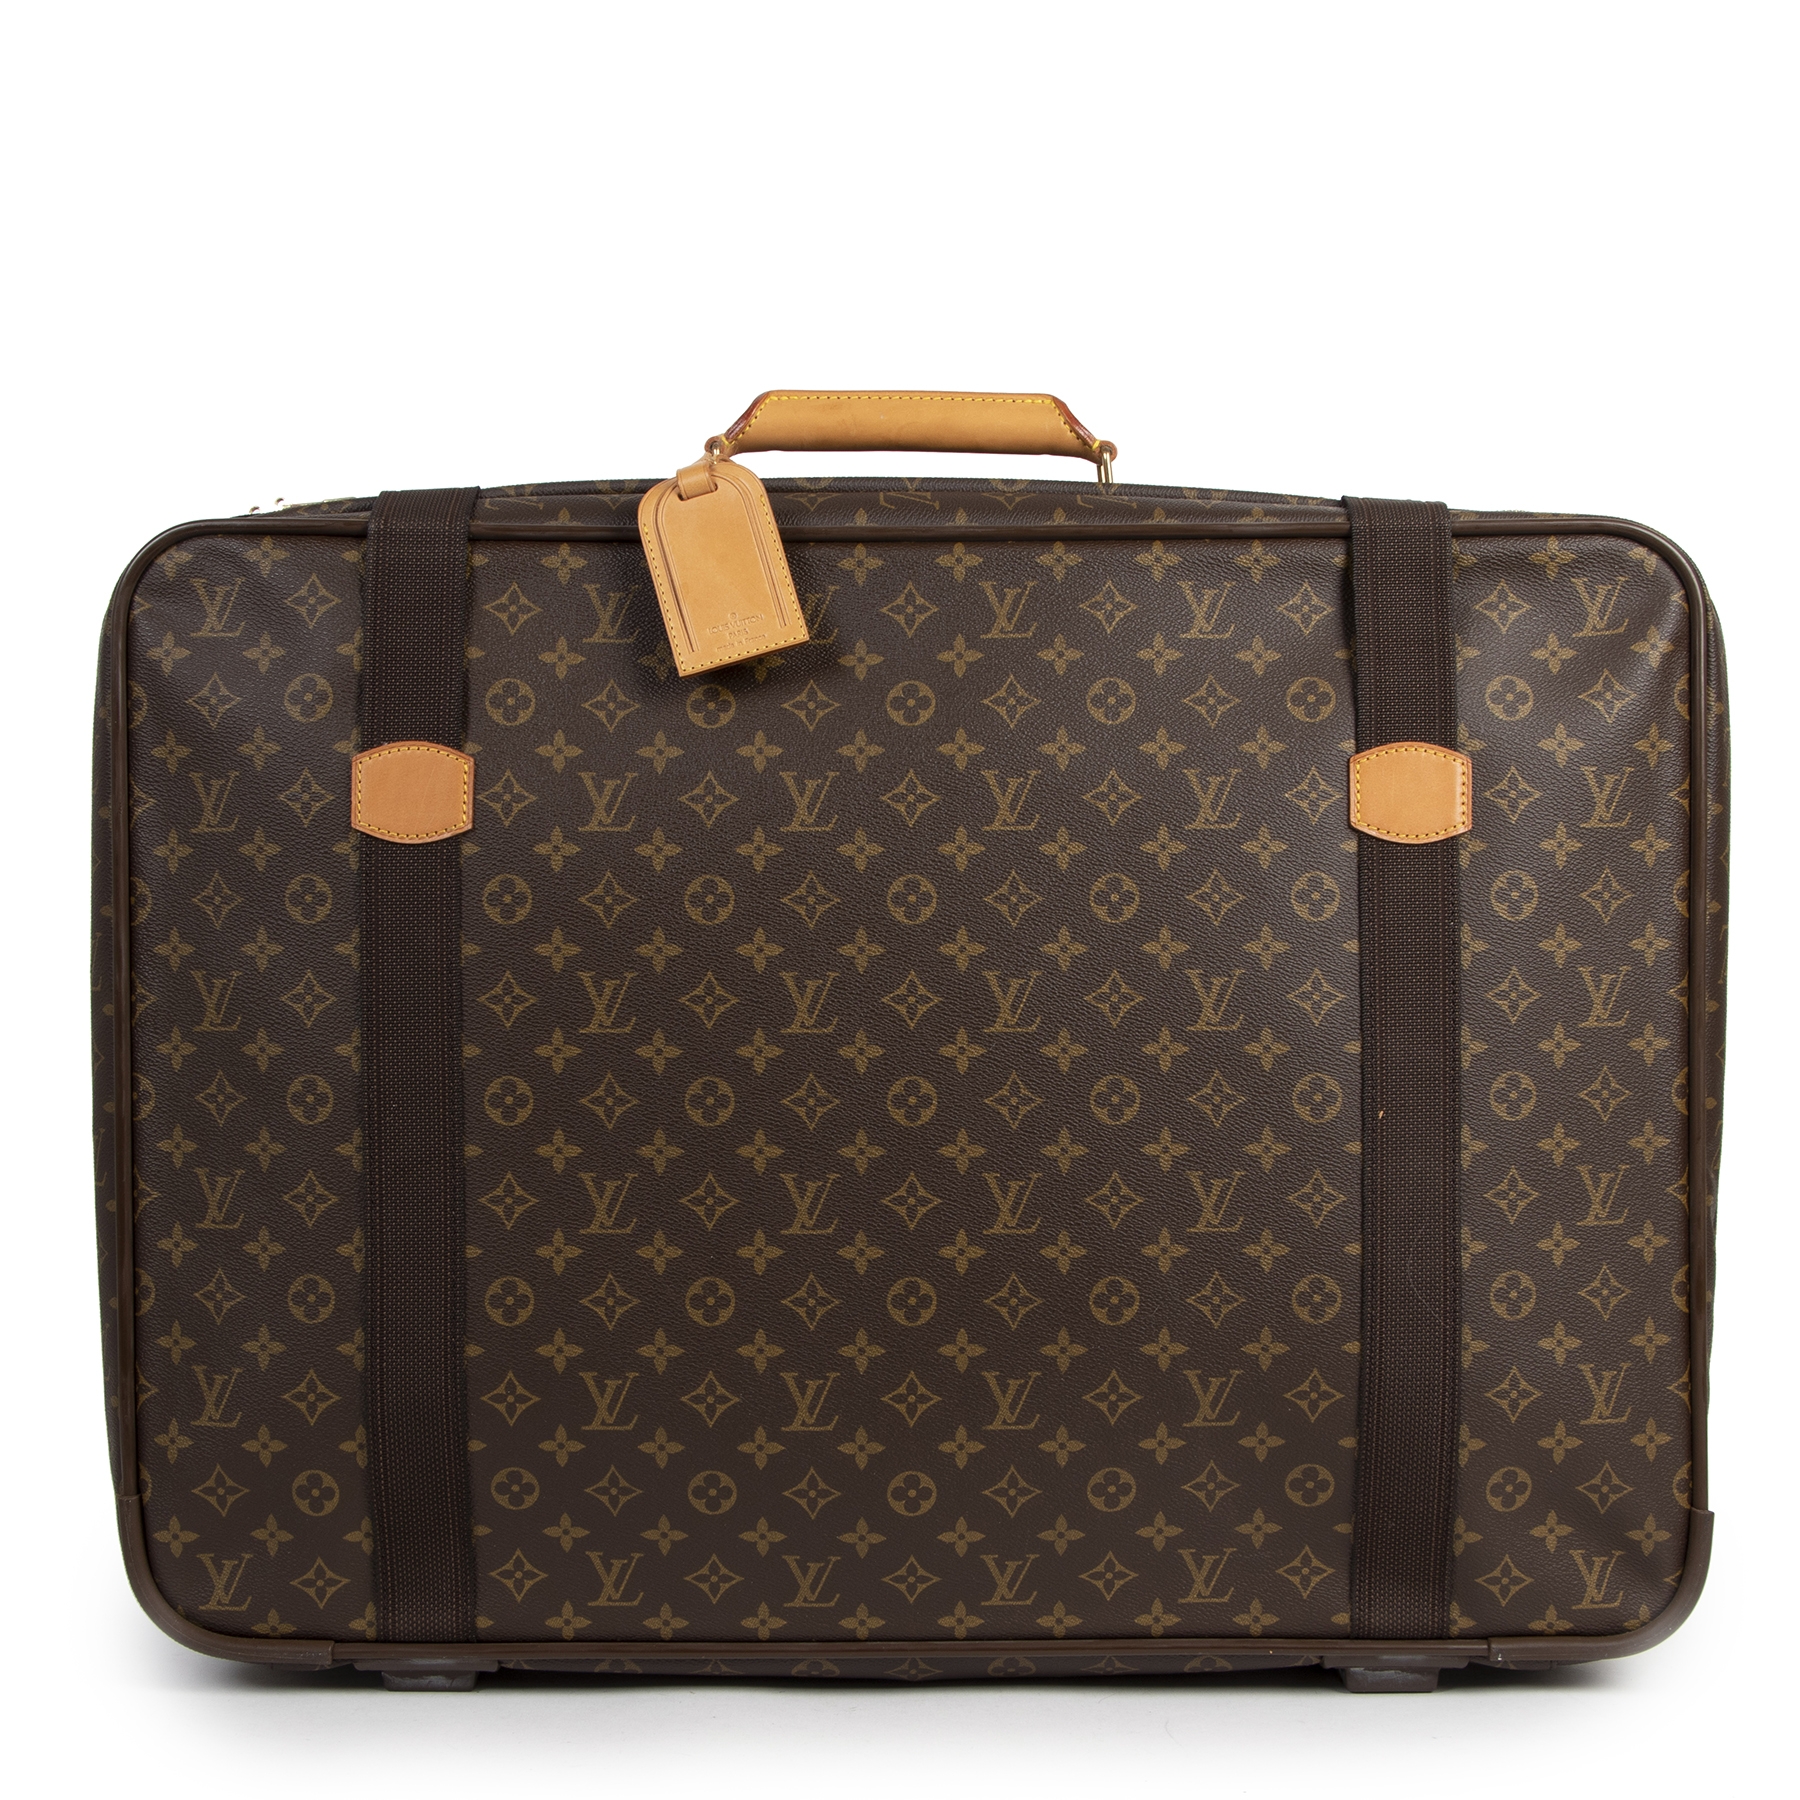 A Louis Vuitton Monogram Canvas Hand Luggage Suitcase. L…